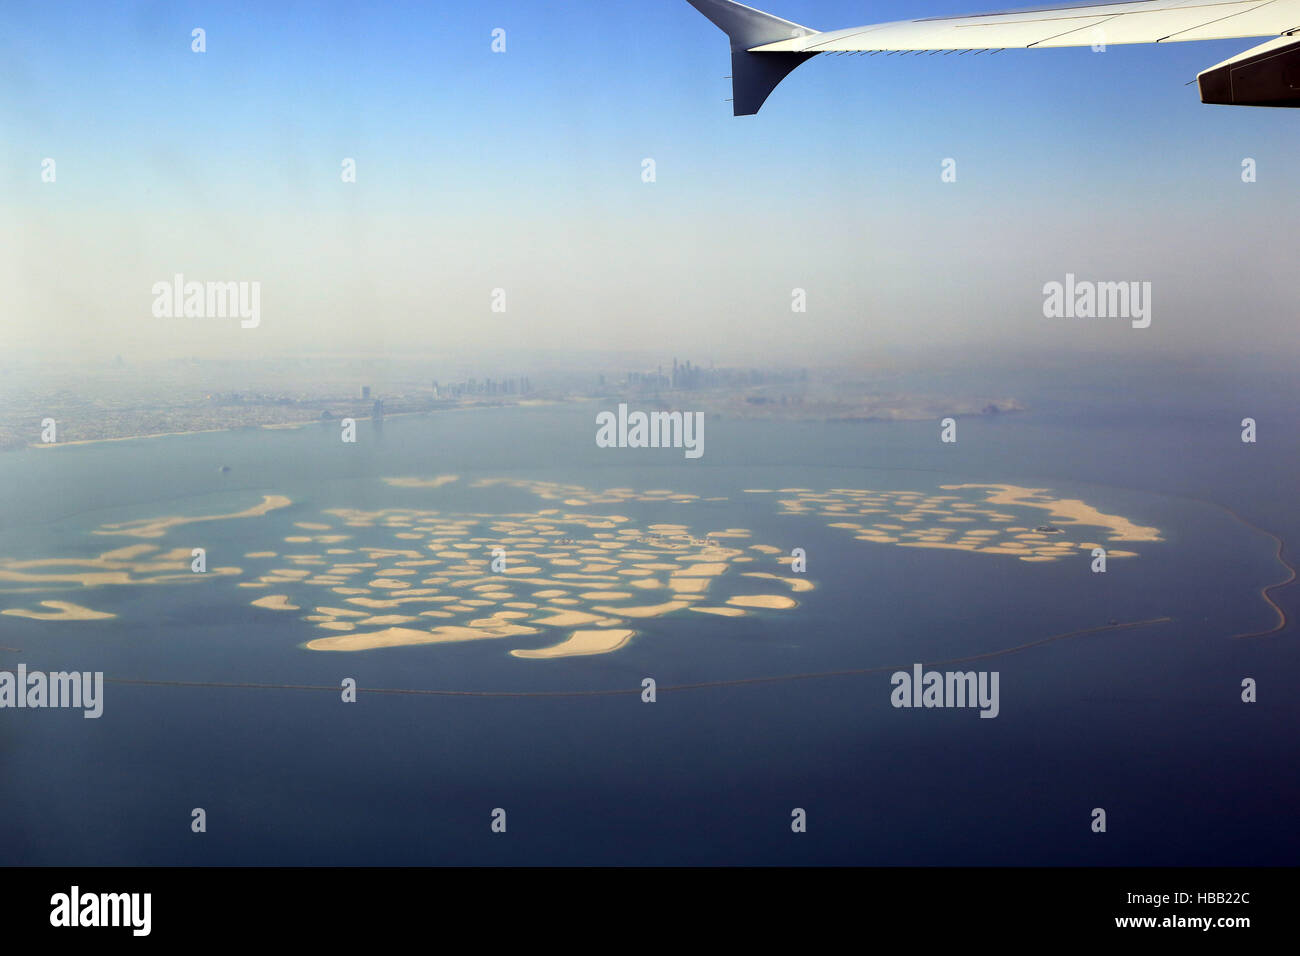 Dubai, artificial islands Stock Photo